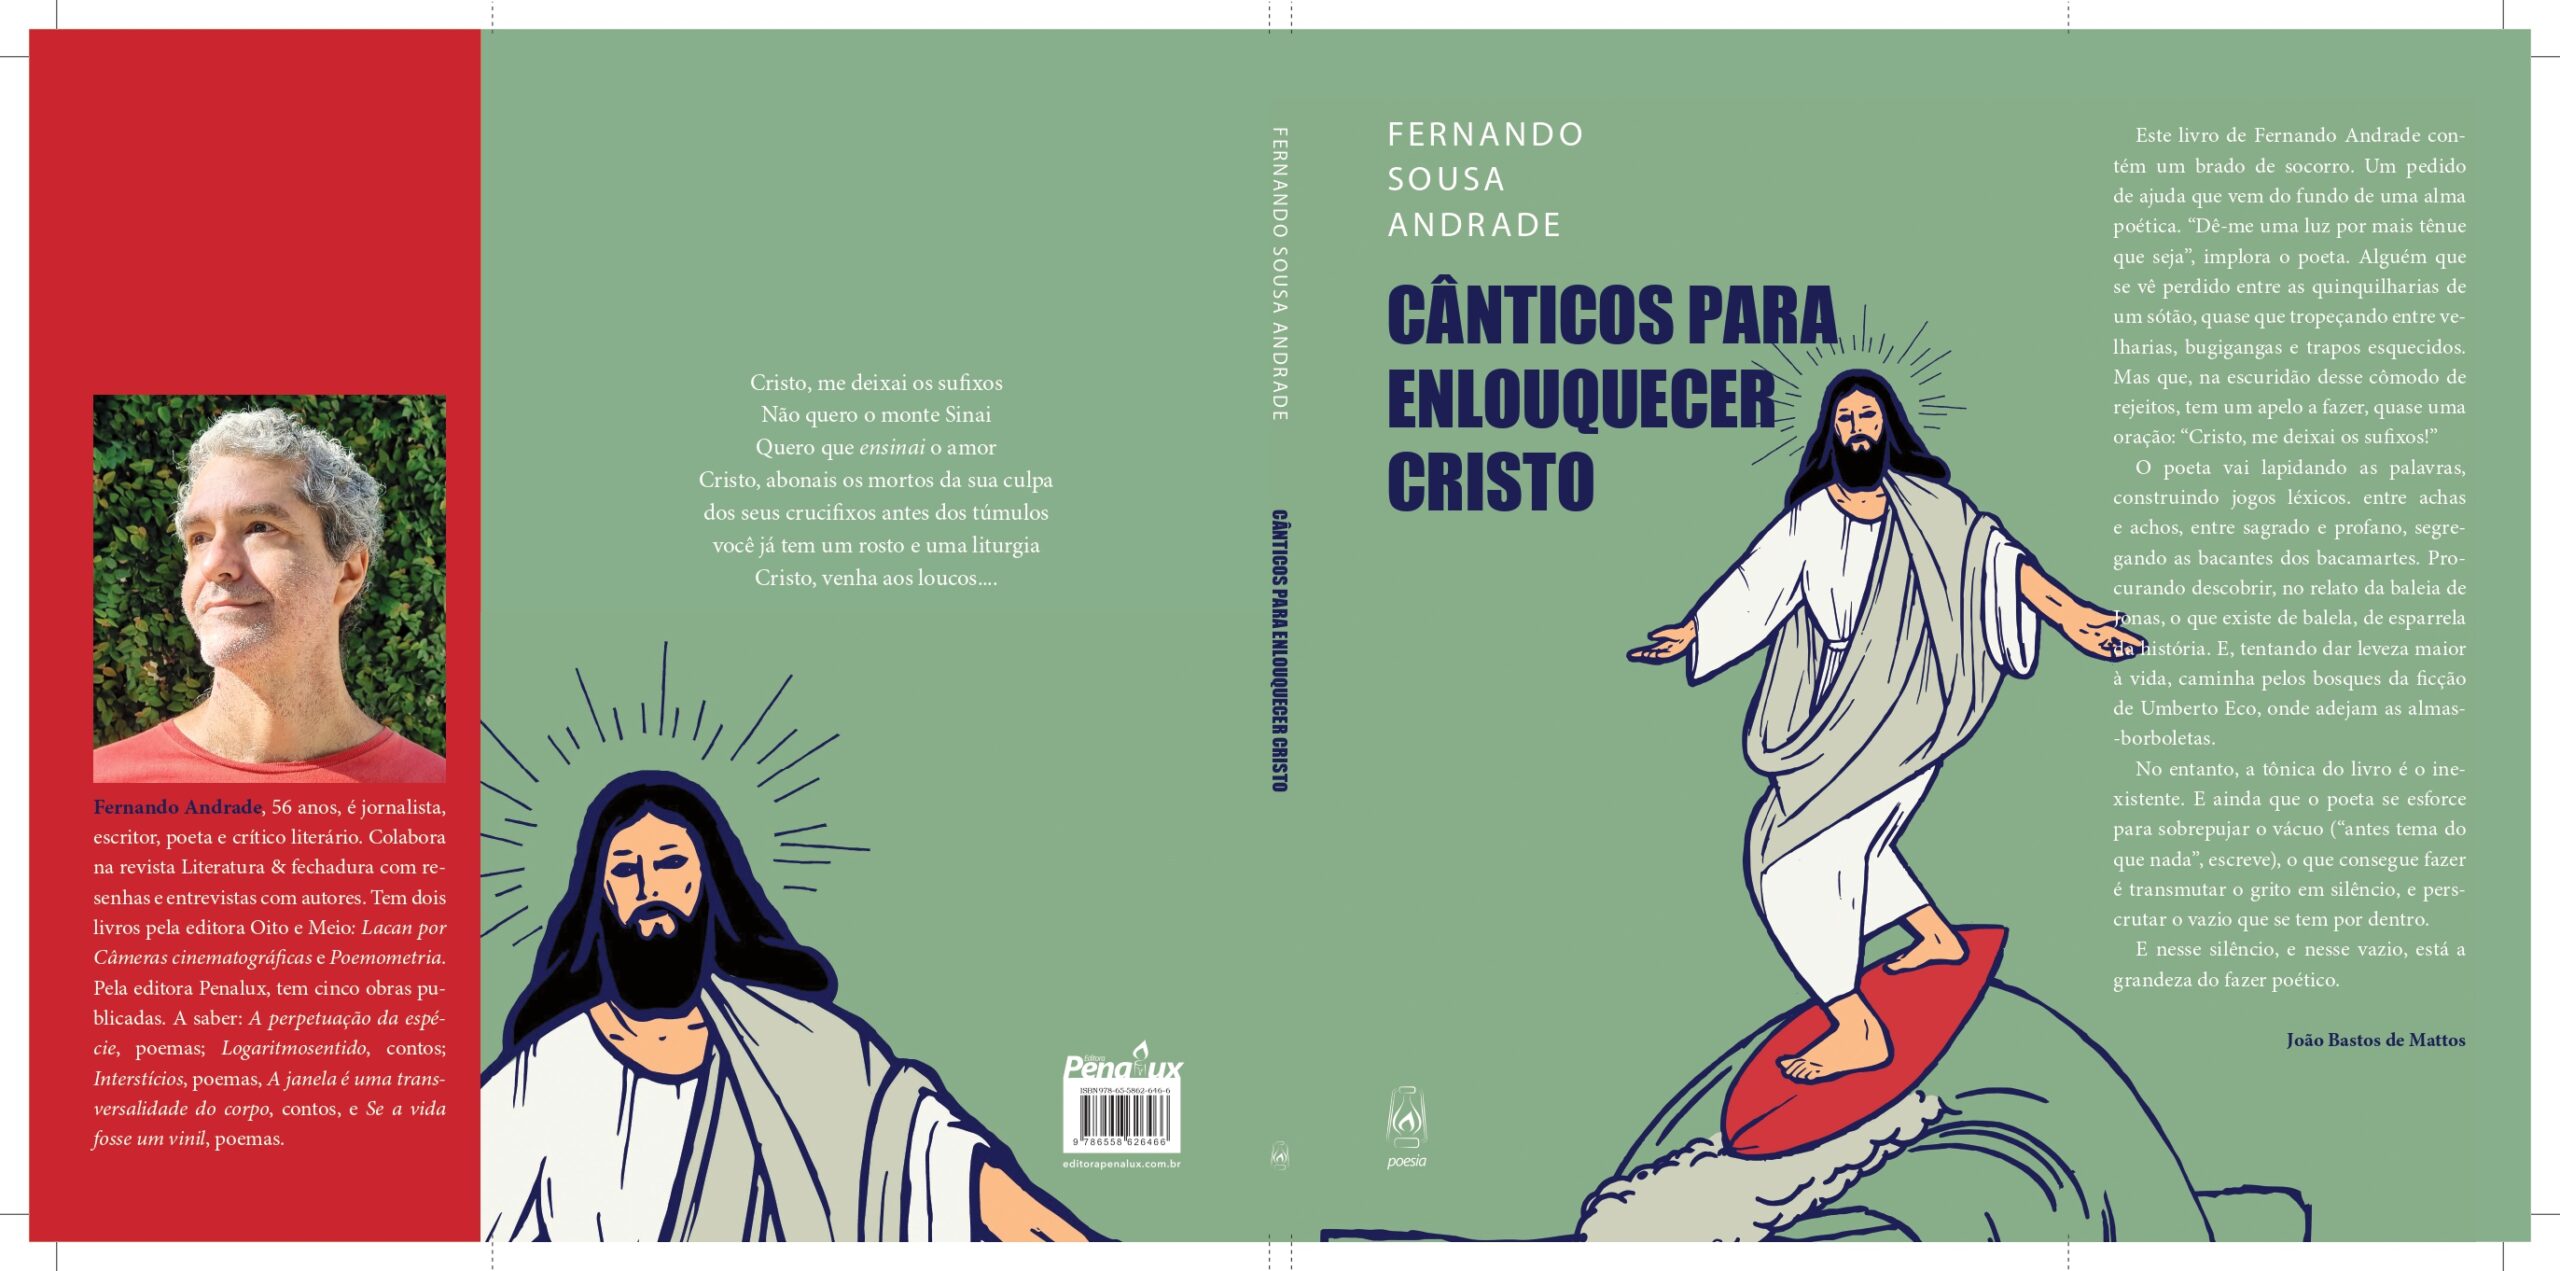 Fernando Sousa Andrade JPG scaled - Fernando Andrade: A genialidade da escrita em poesia, música e prosa